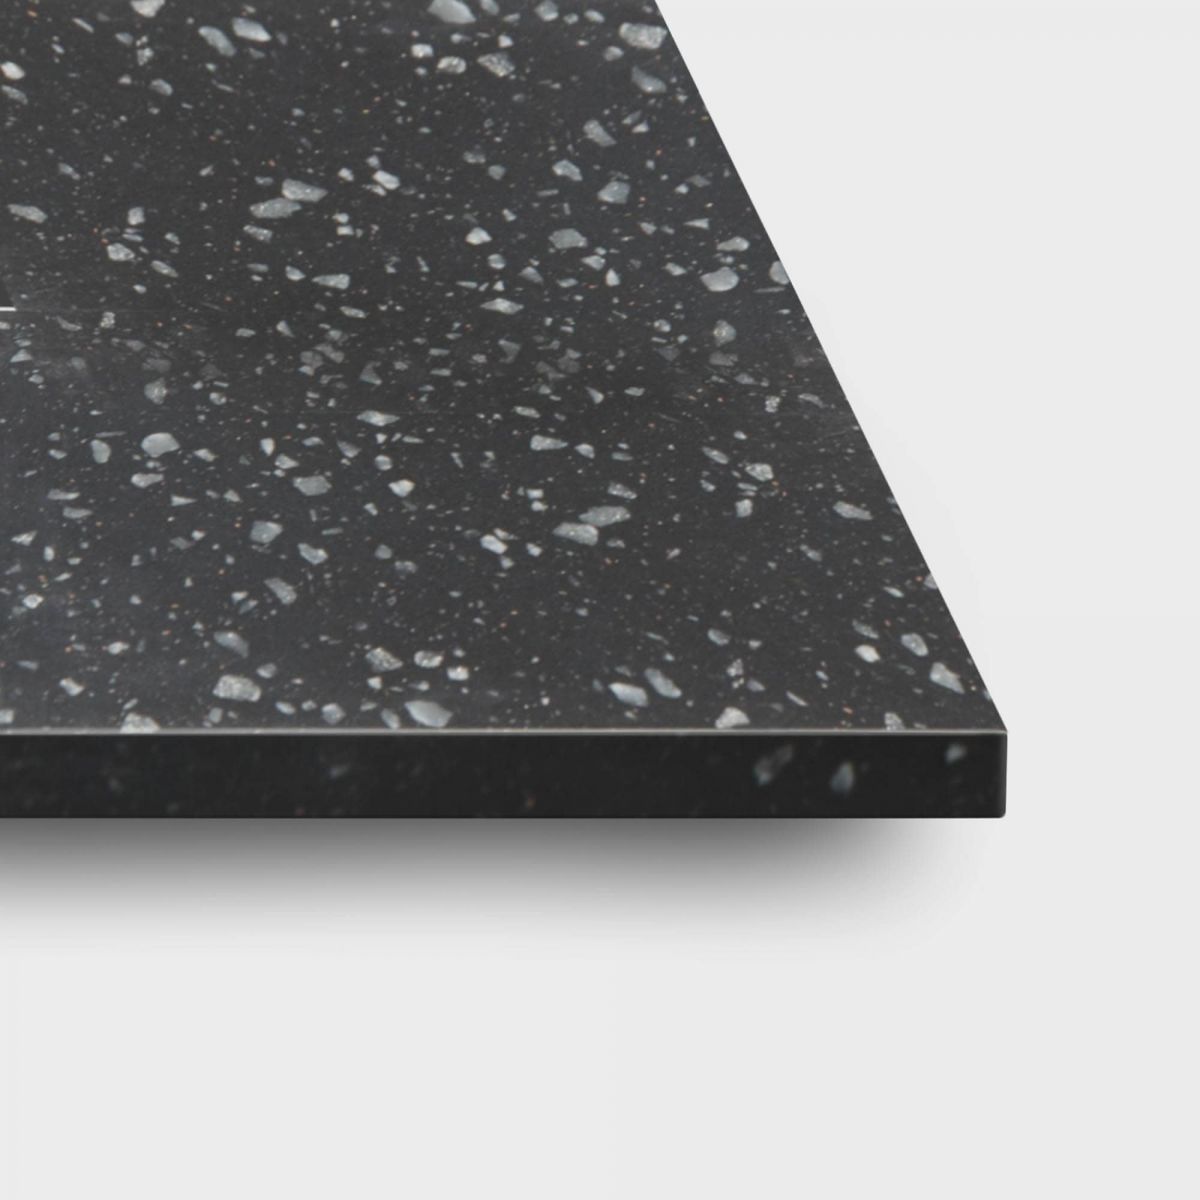 Black Granite Kordura Top